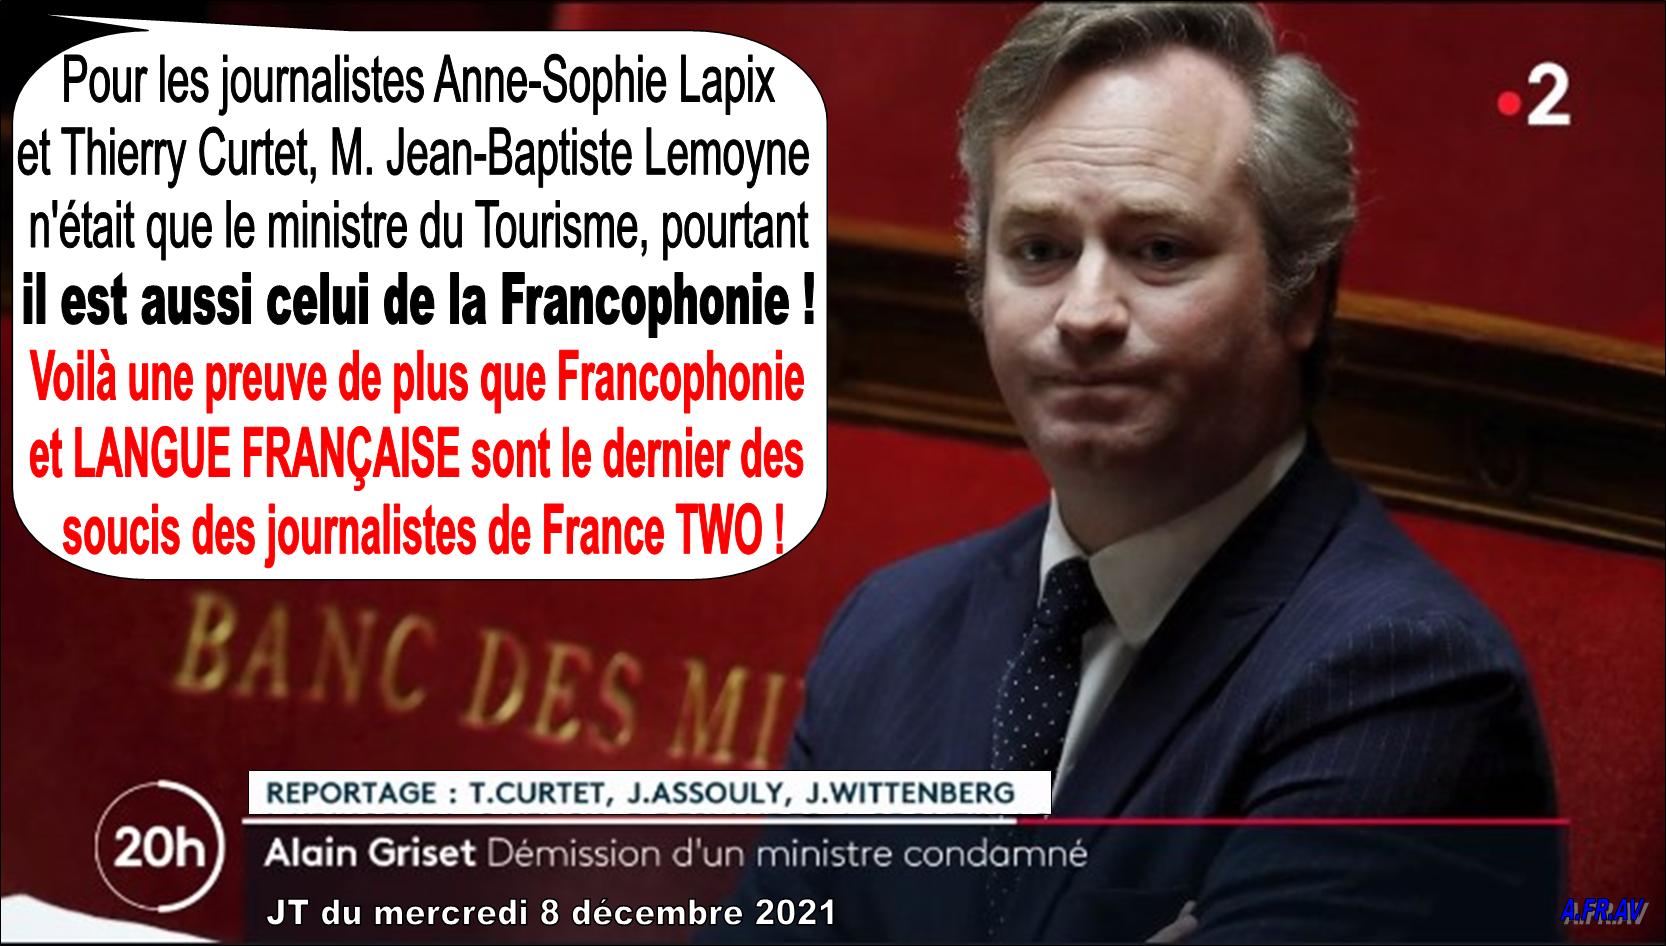 Jean-Baptiste Lemoyne, Thierry Curtet, Anne-Sophie Lapix, Francophonie et langue française au JT de 20h de France 2